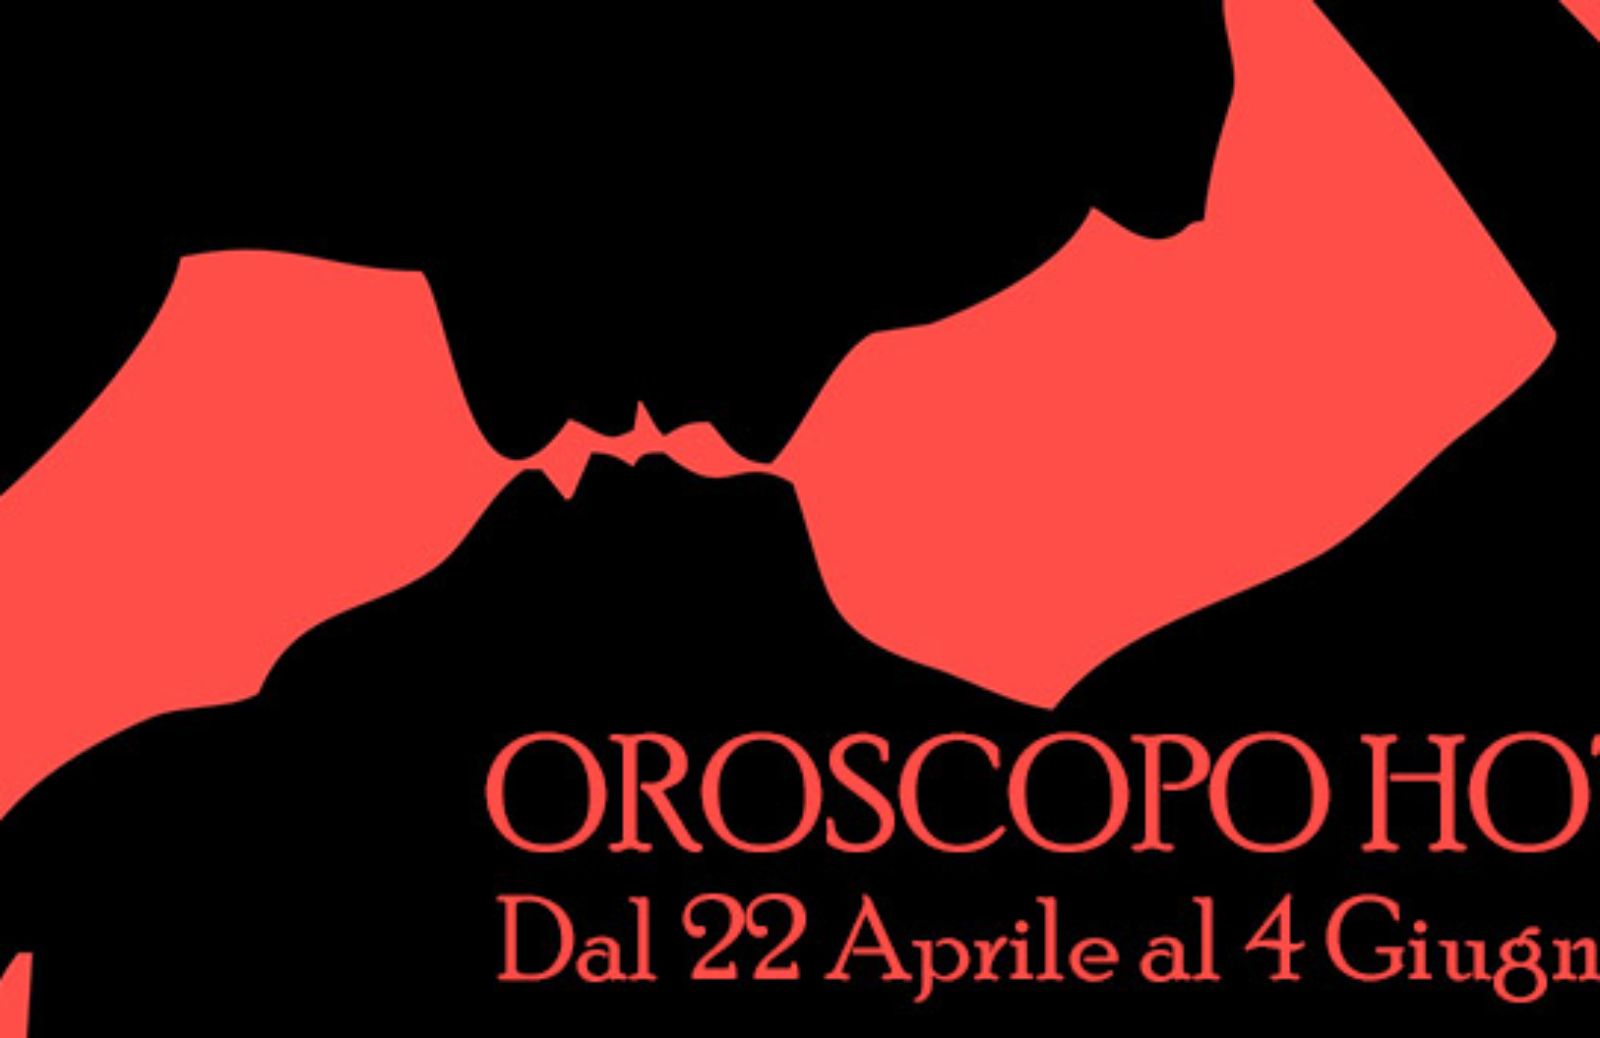 Oroscopo Hot: dal 22 aprile al 4 giugno